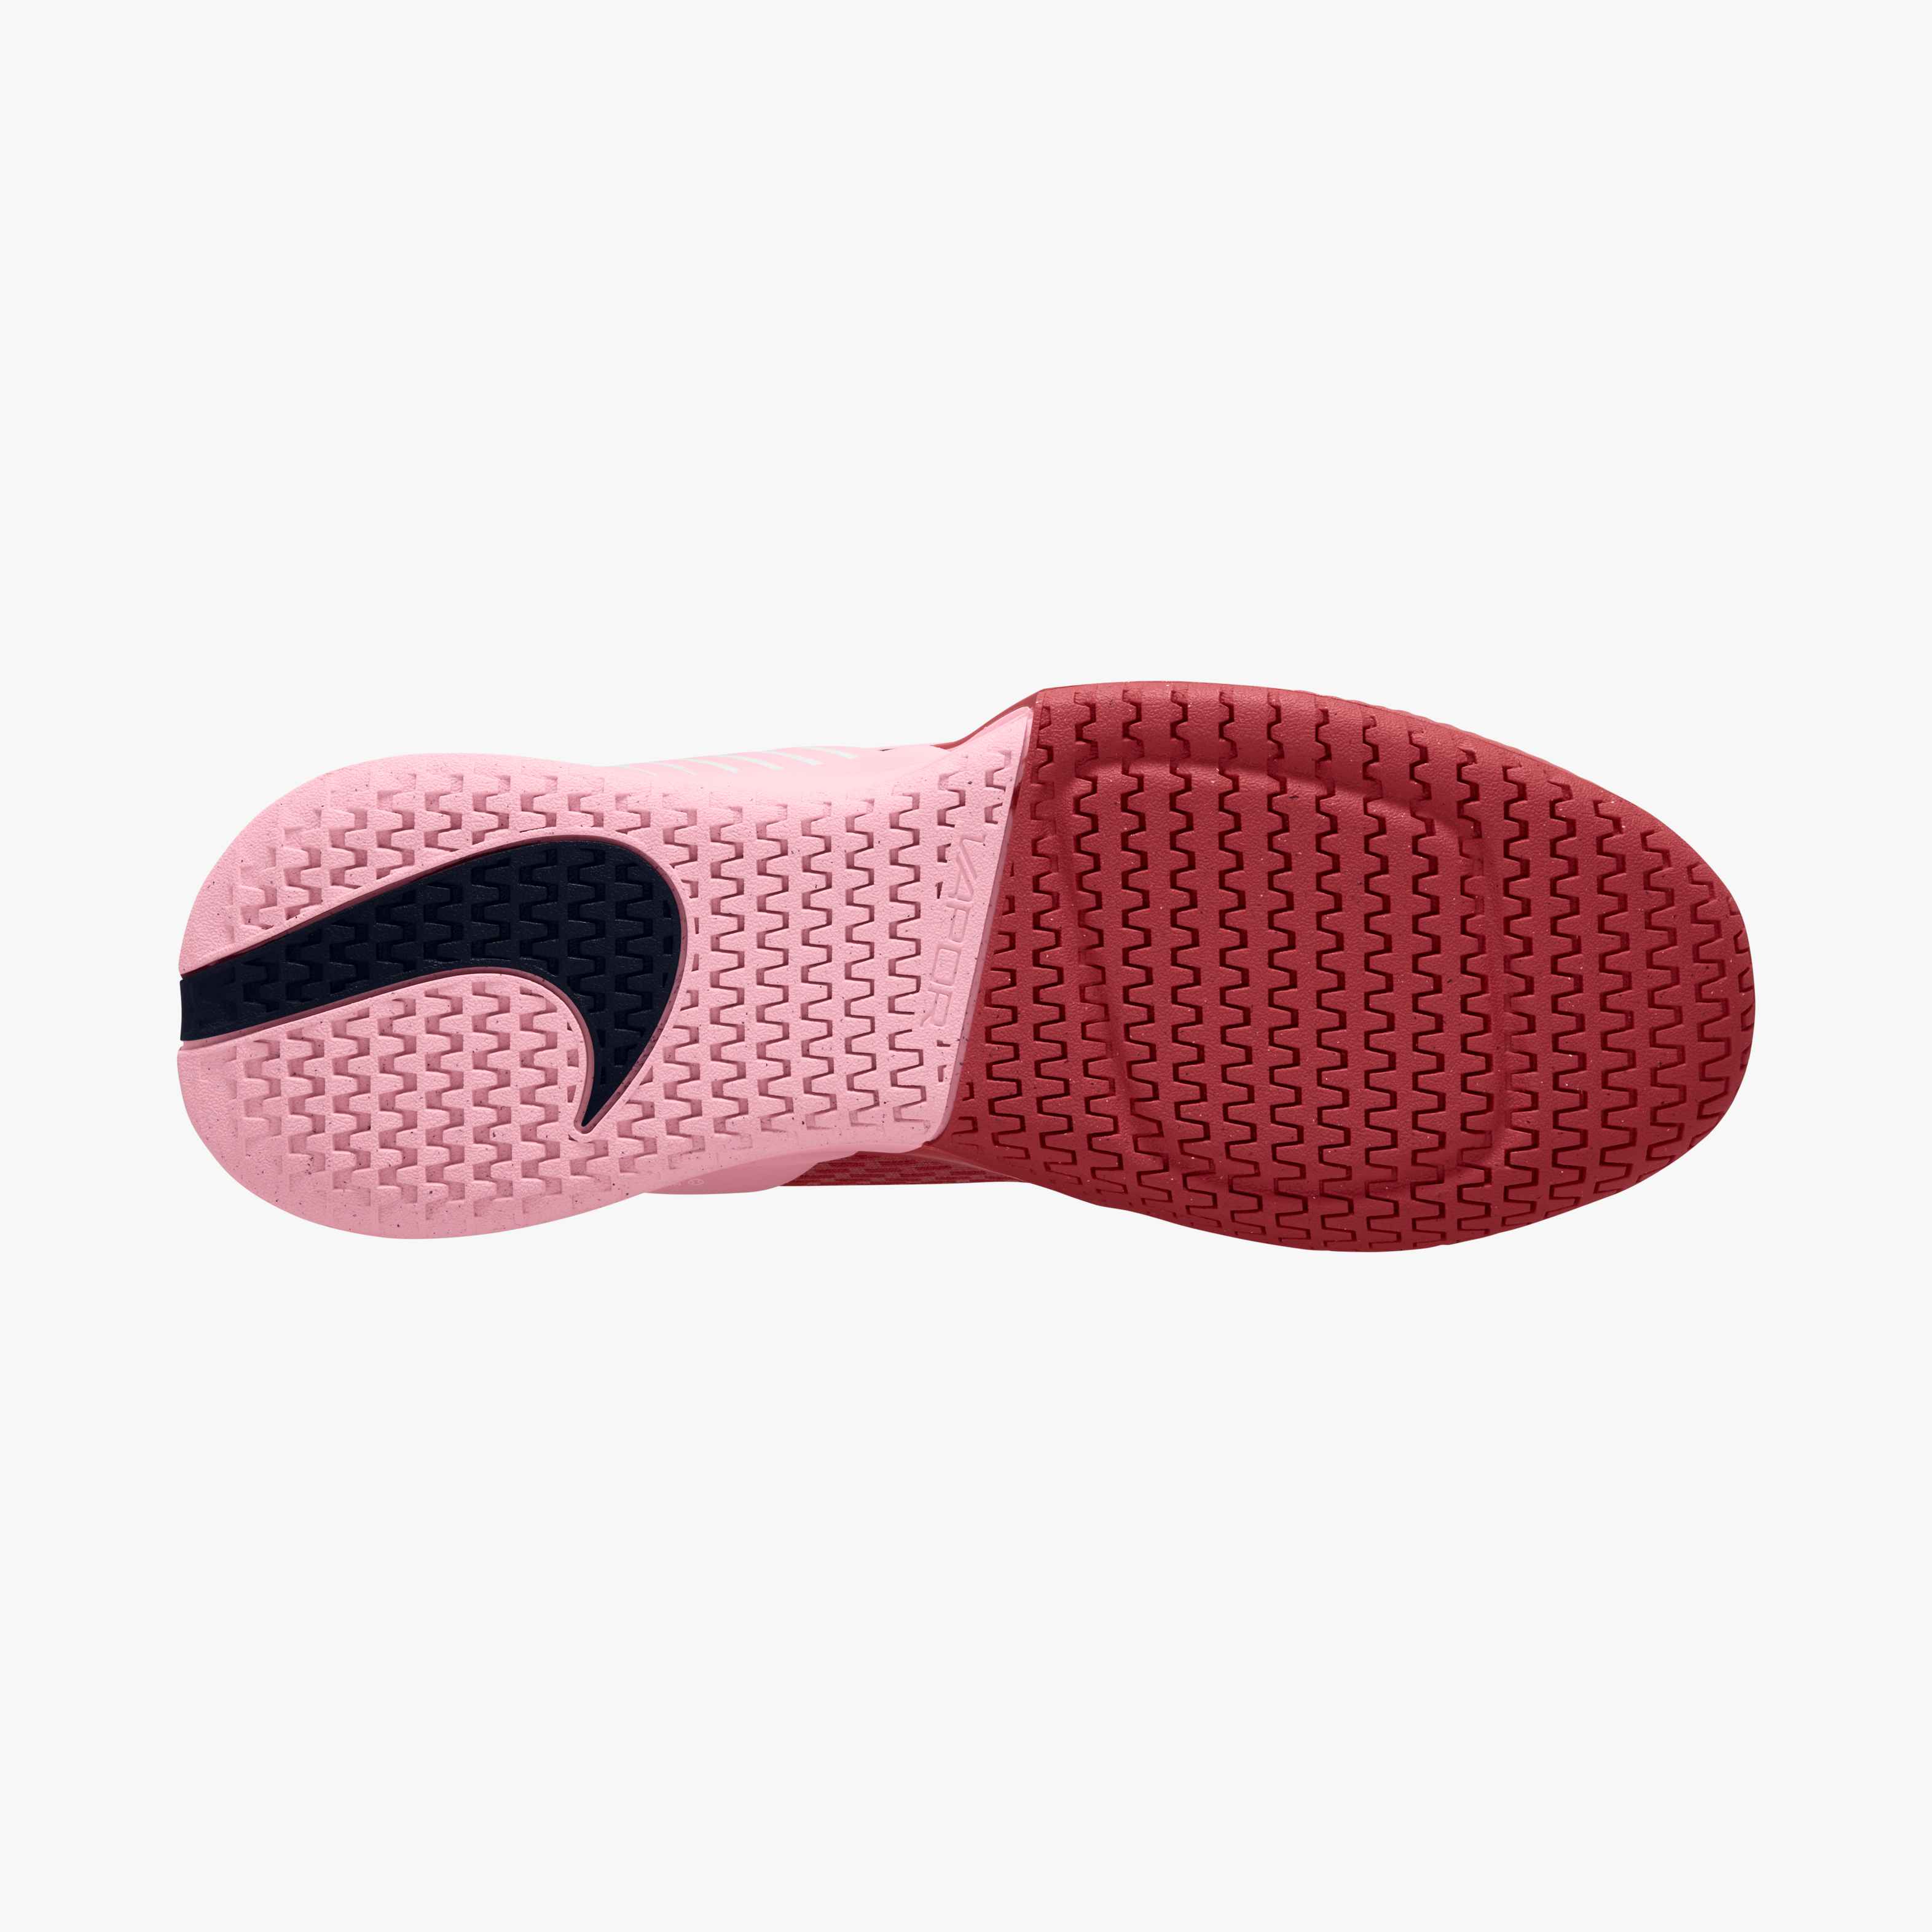 Nike Women's Air Zoom Vapor Pro 2 in Adobe/Obsidian-Med Soft Pink-White